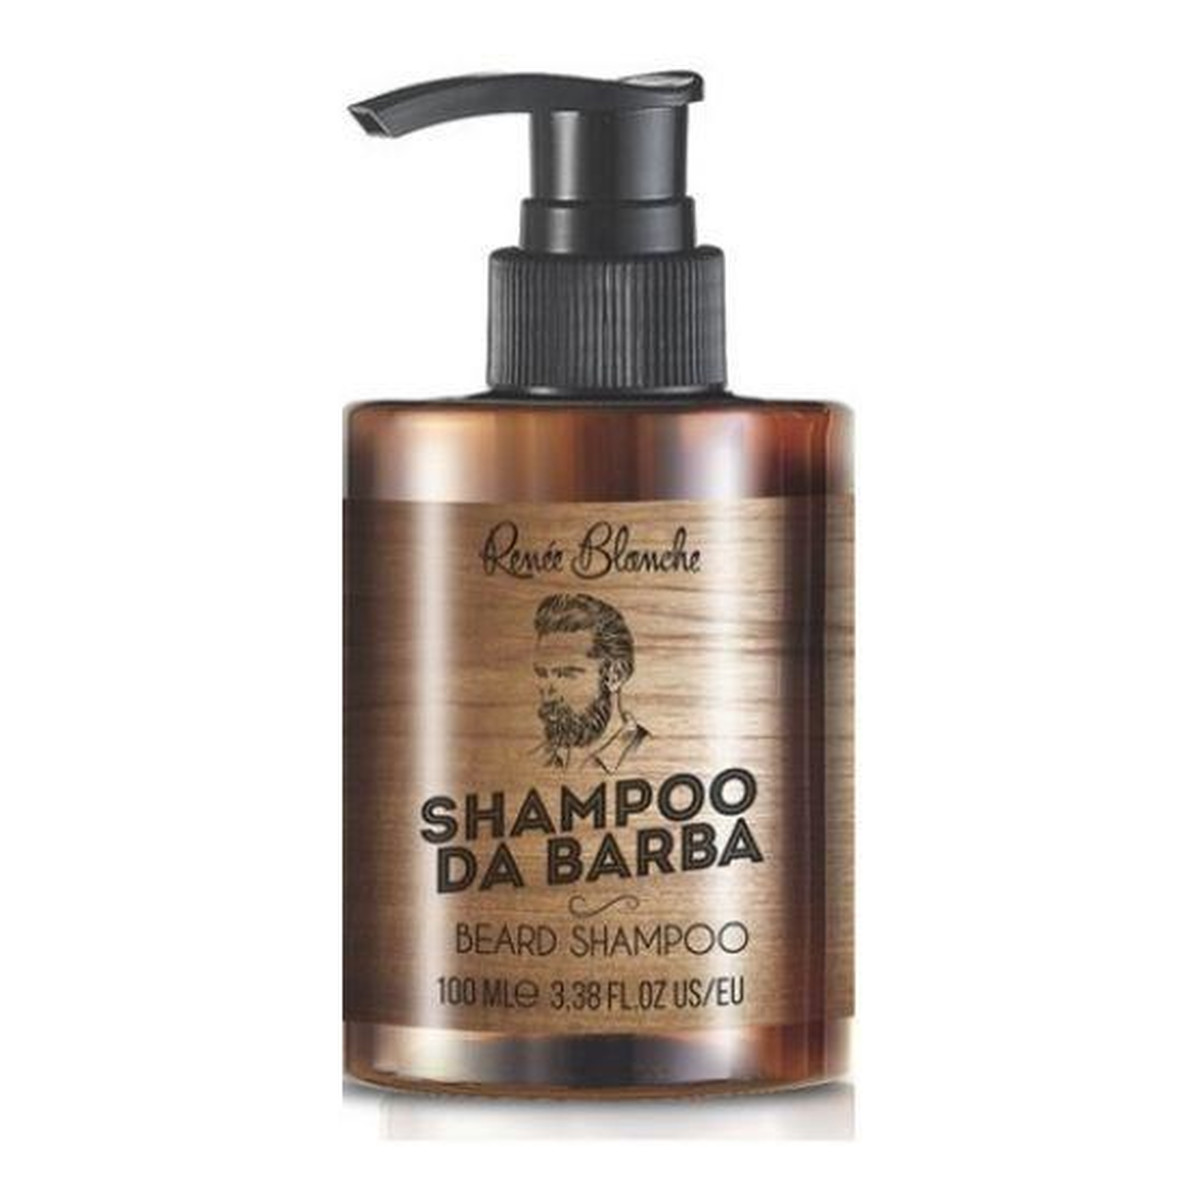 Renee Blanche Shampoo Da Barba Beard Shampoo Szampon Do Brody Gold 100ml